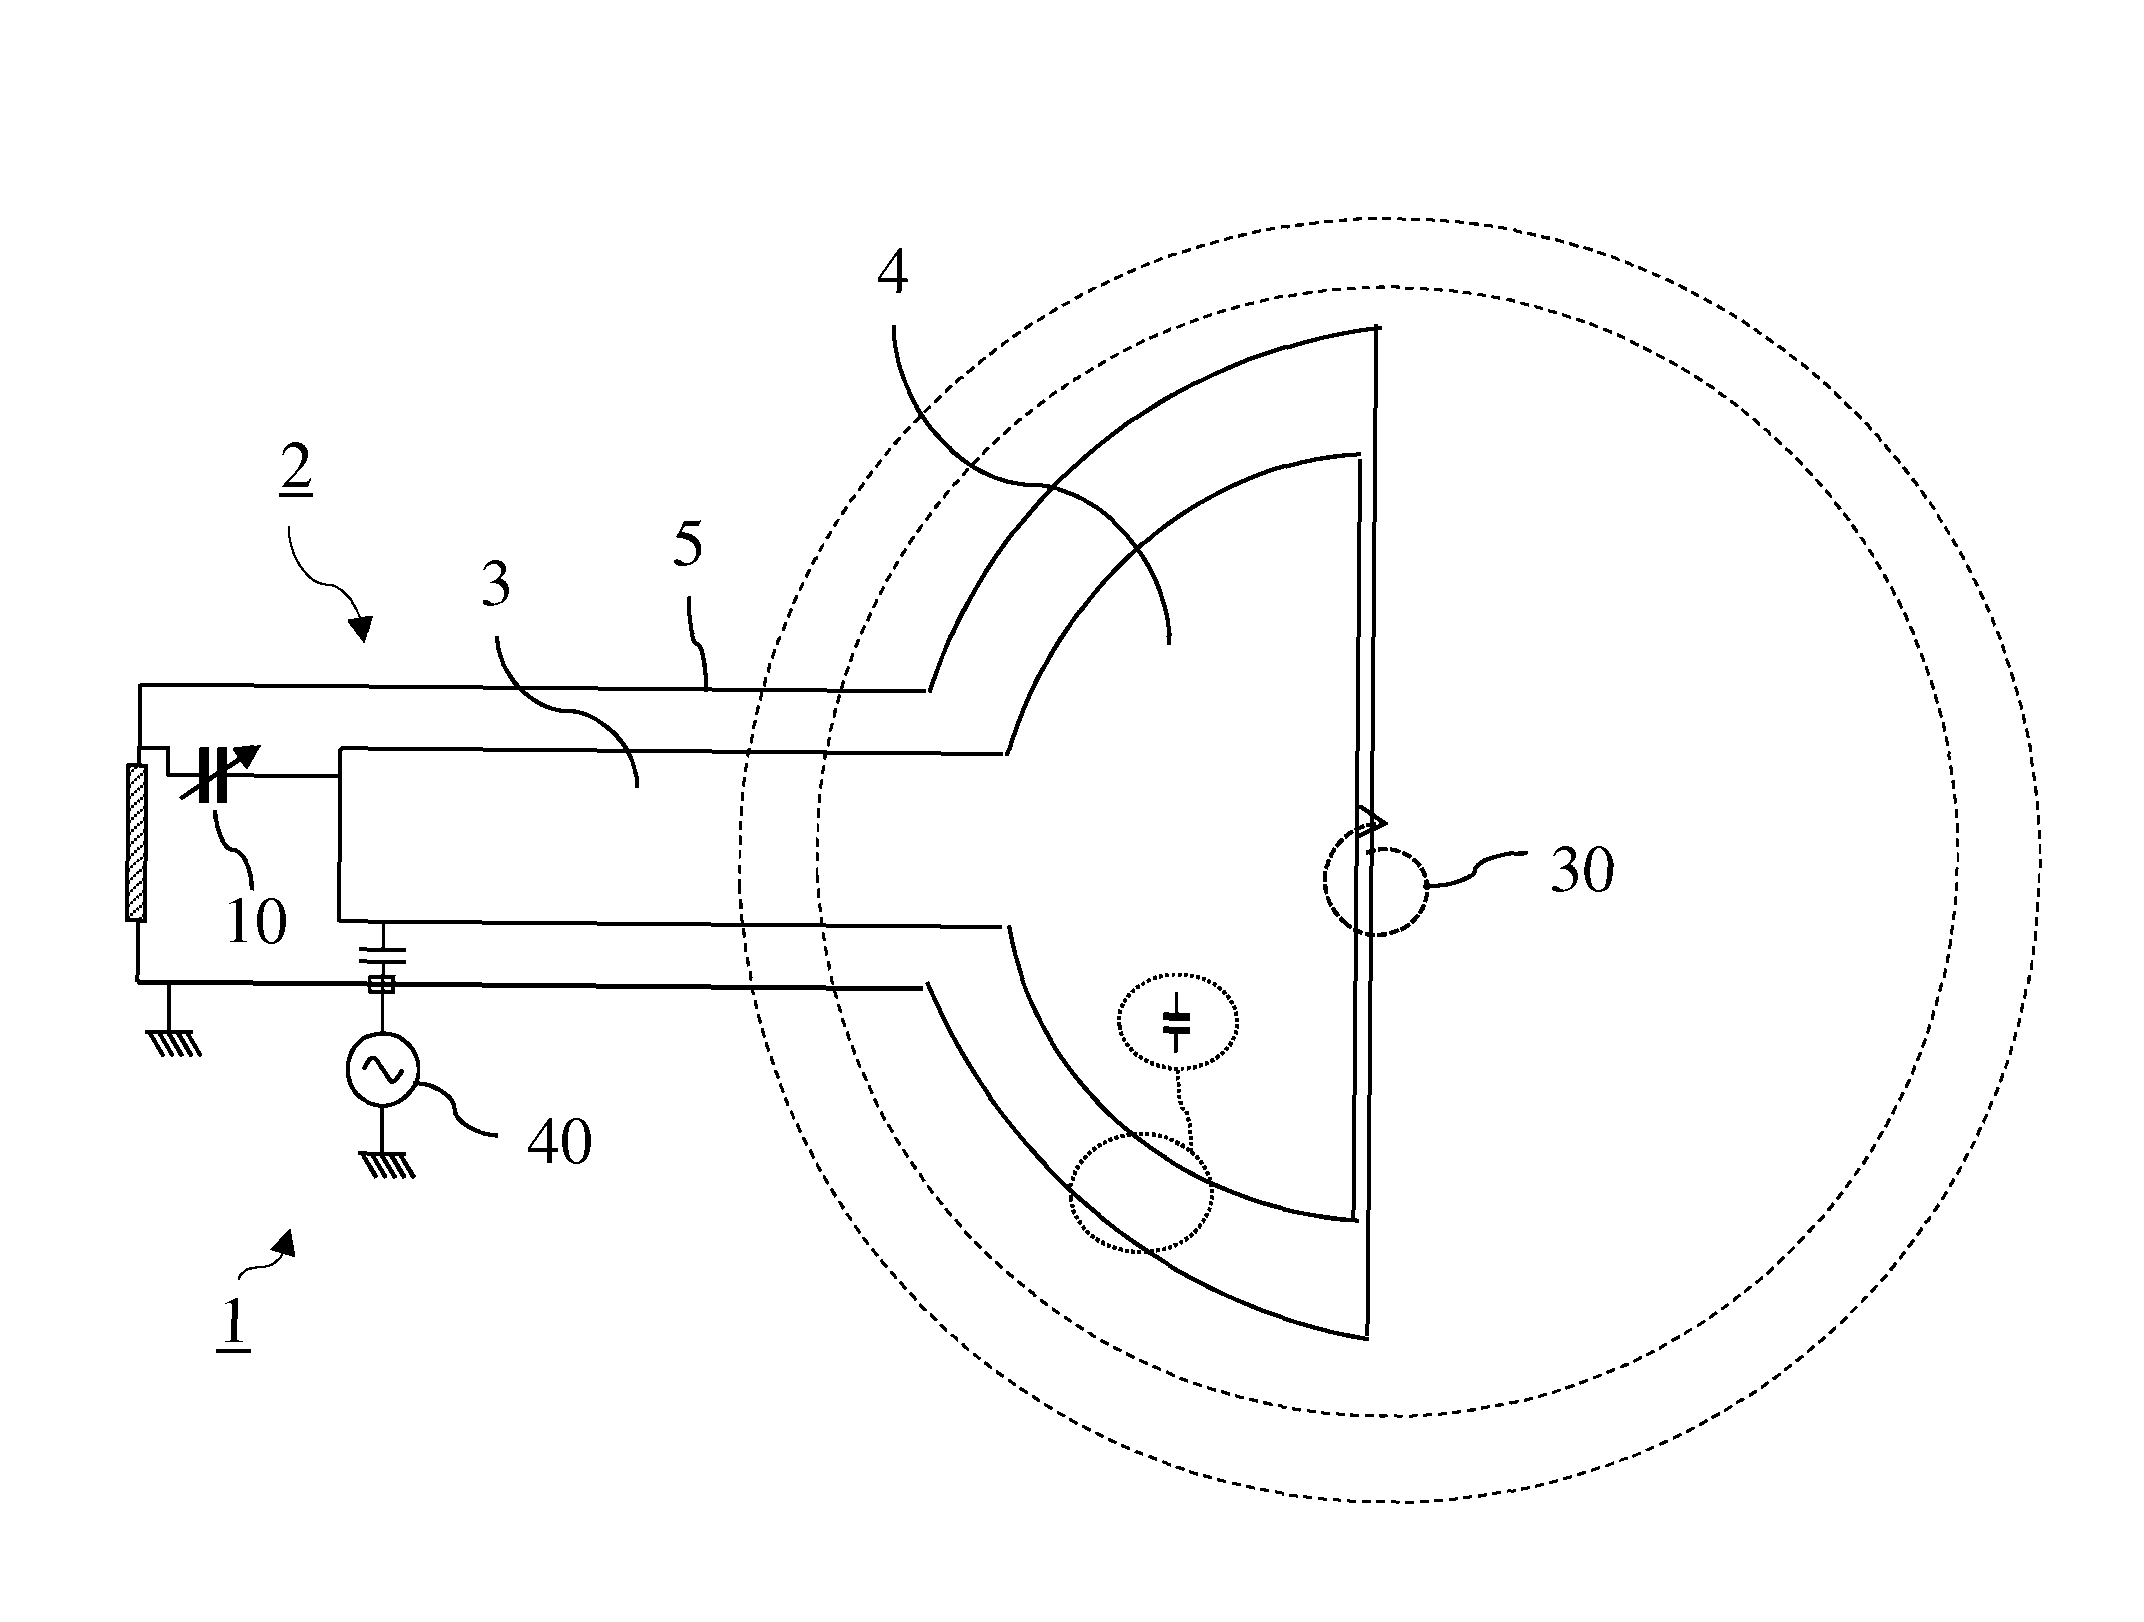 RF system for synchrocyclotron